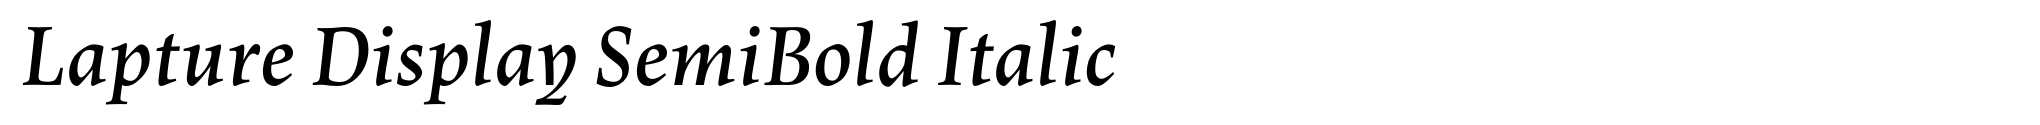 Lapture Display SemiBold Italic image